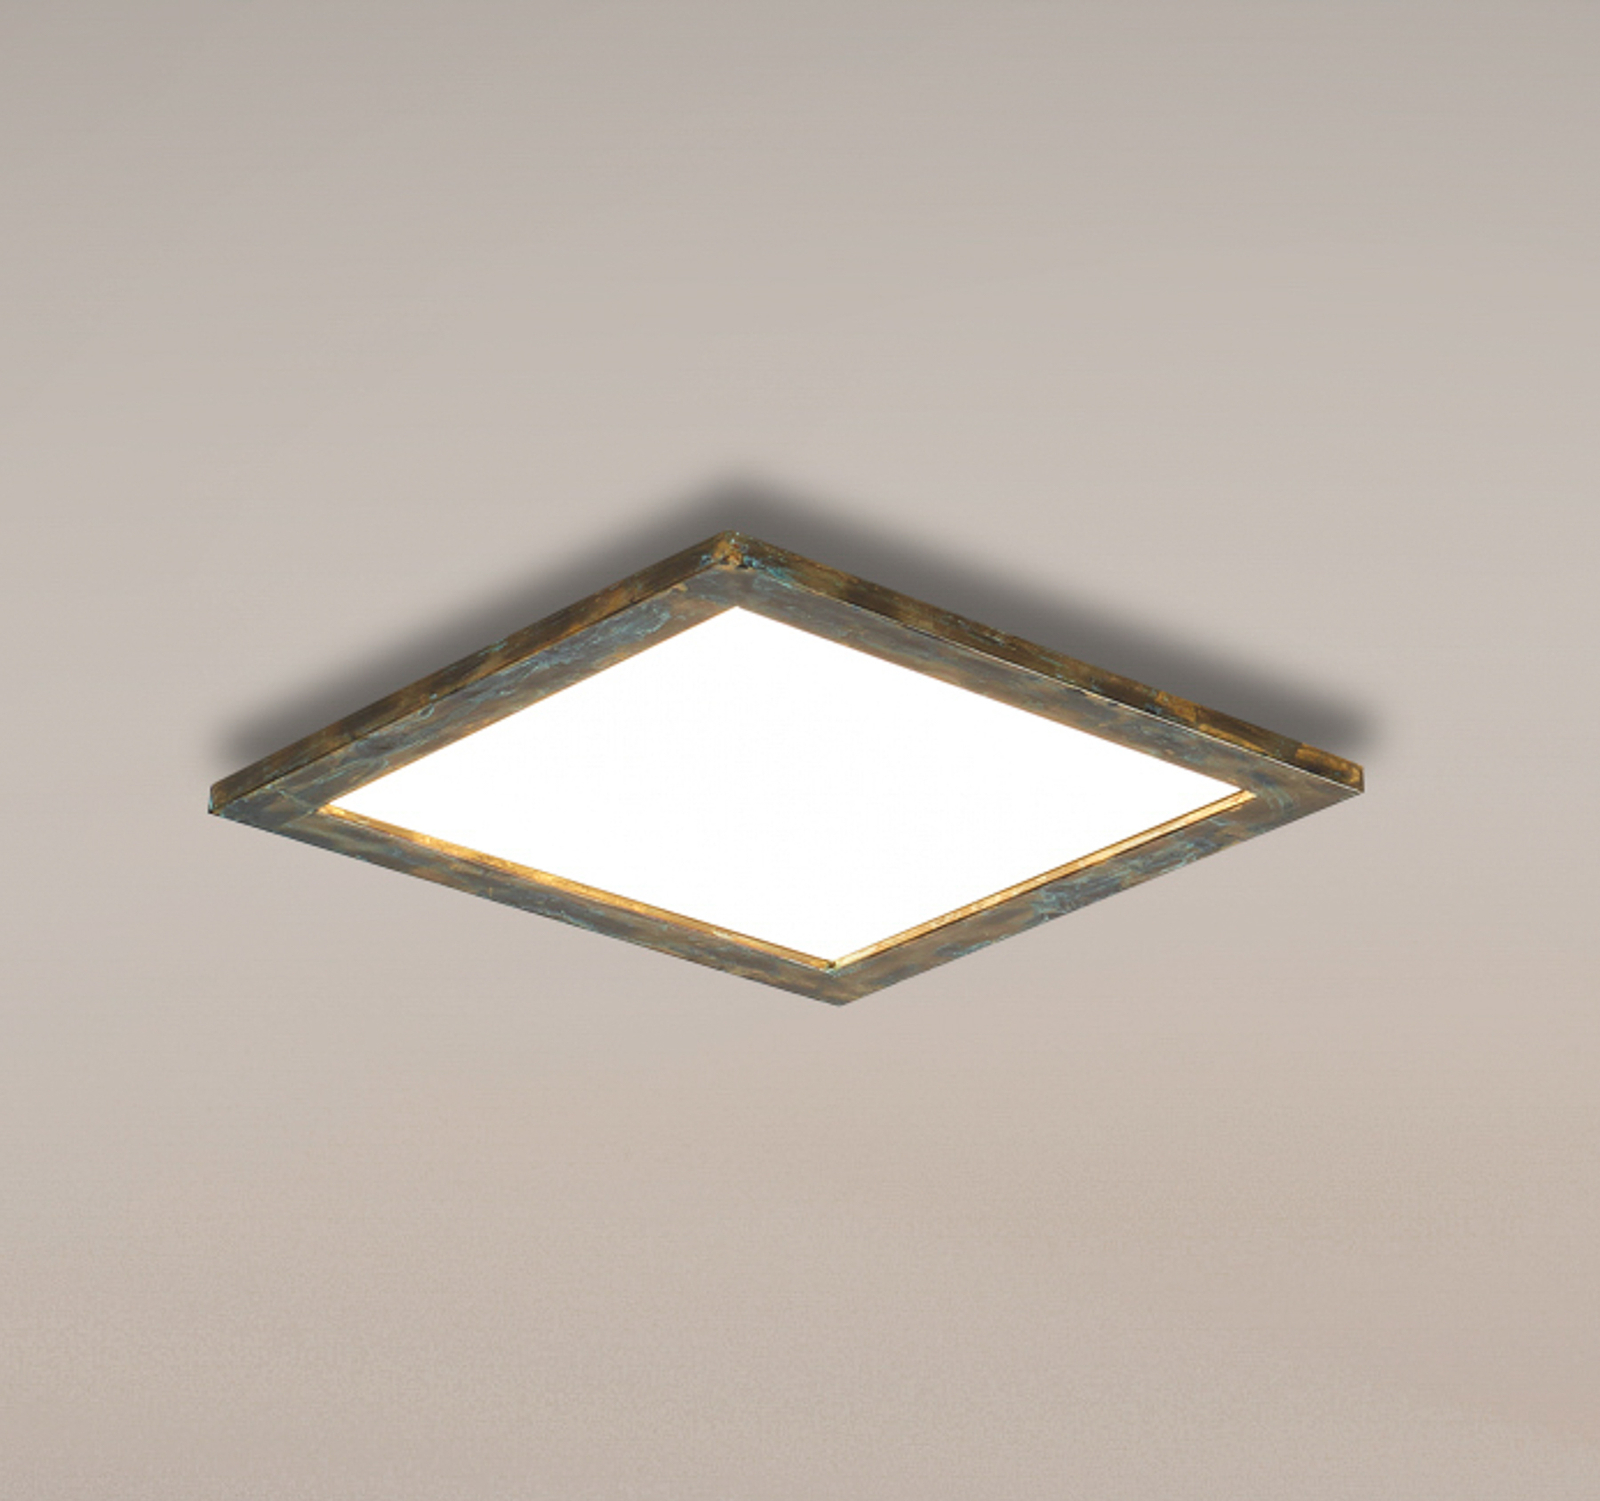 Pannello LED Quitani Aurinor, patina color oro, 45 cm